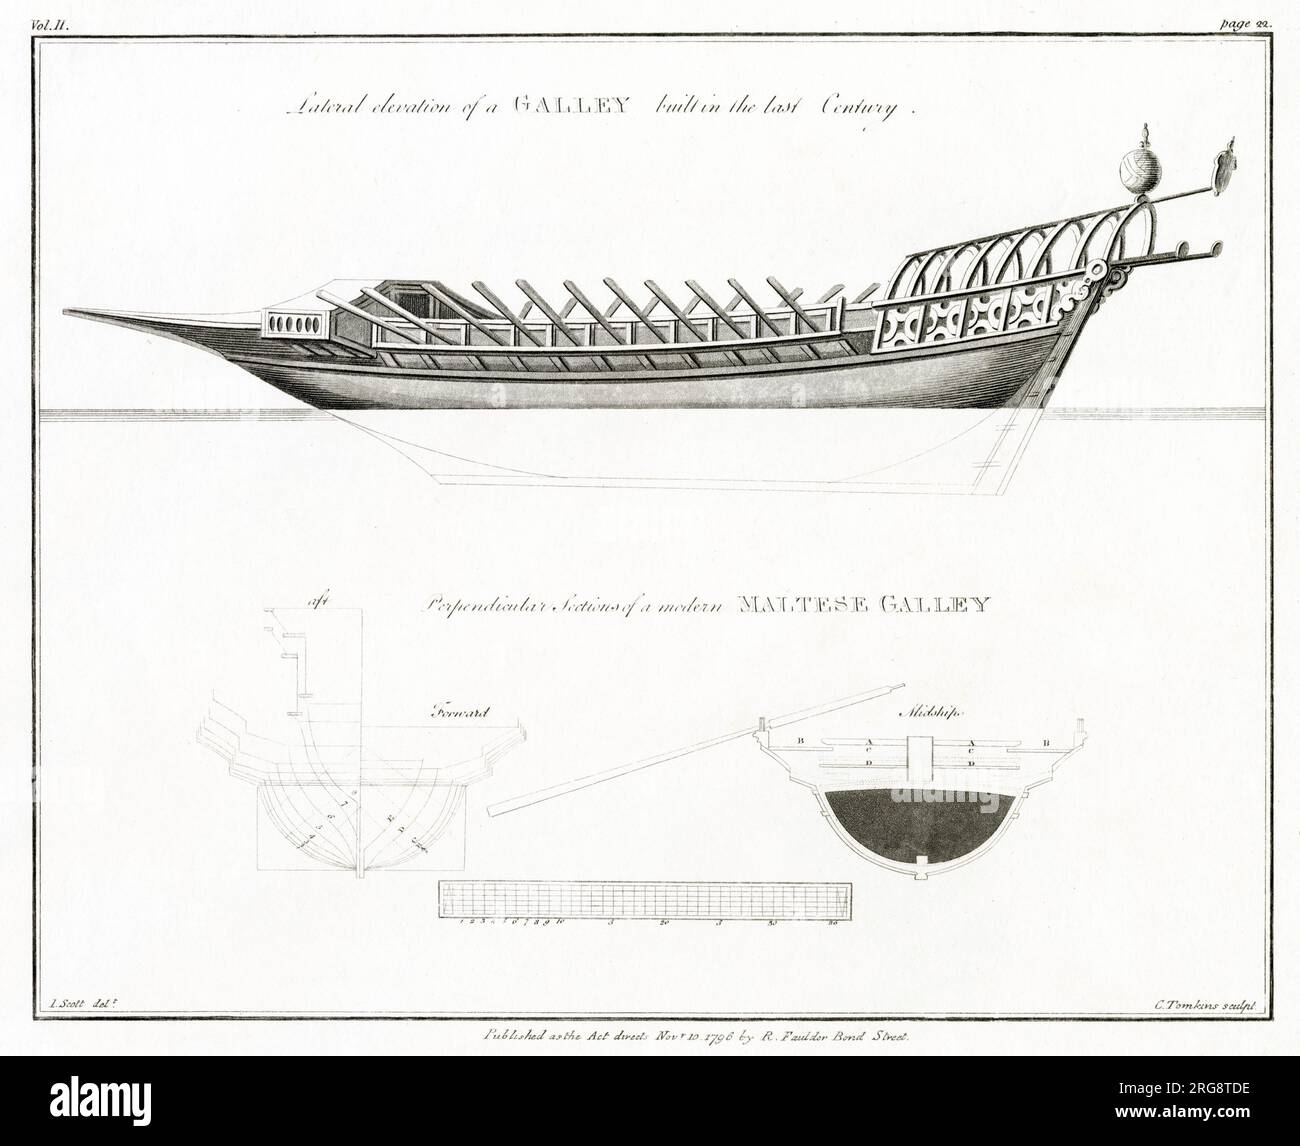 Plan diagrams of a Maltese Galley. Stock Photo